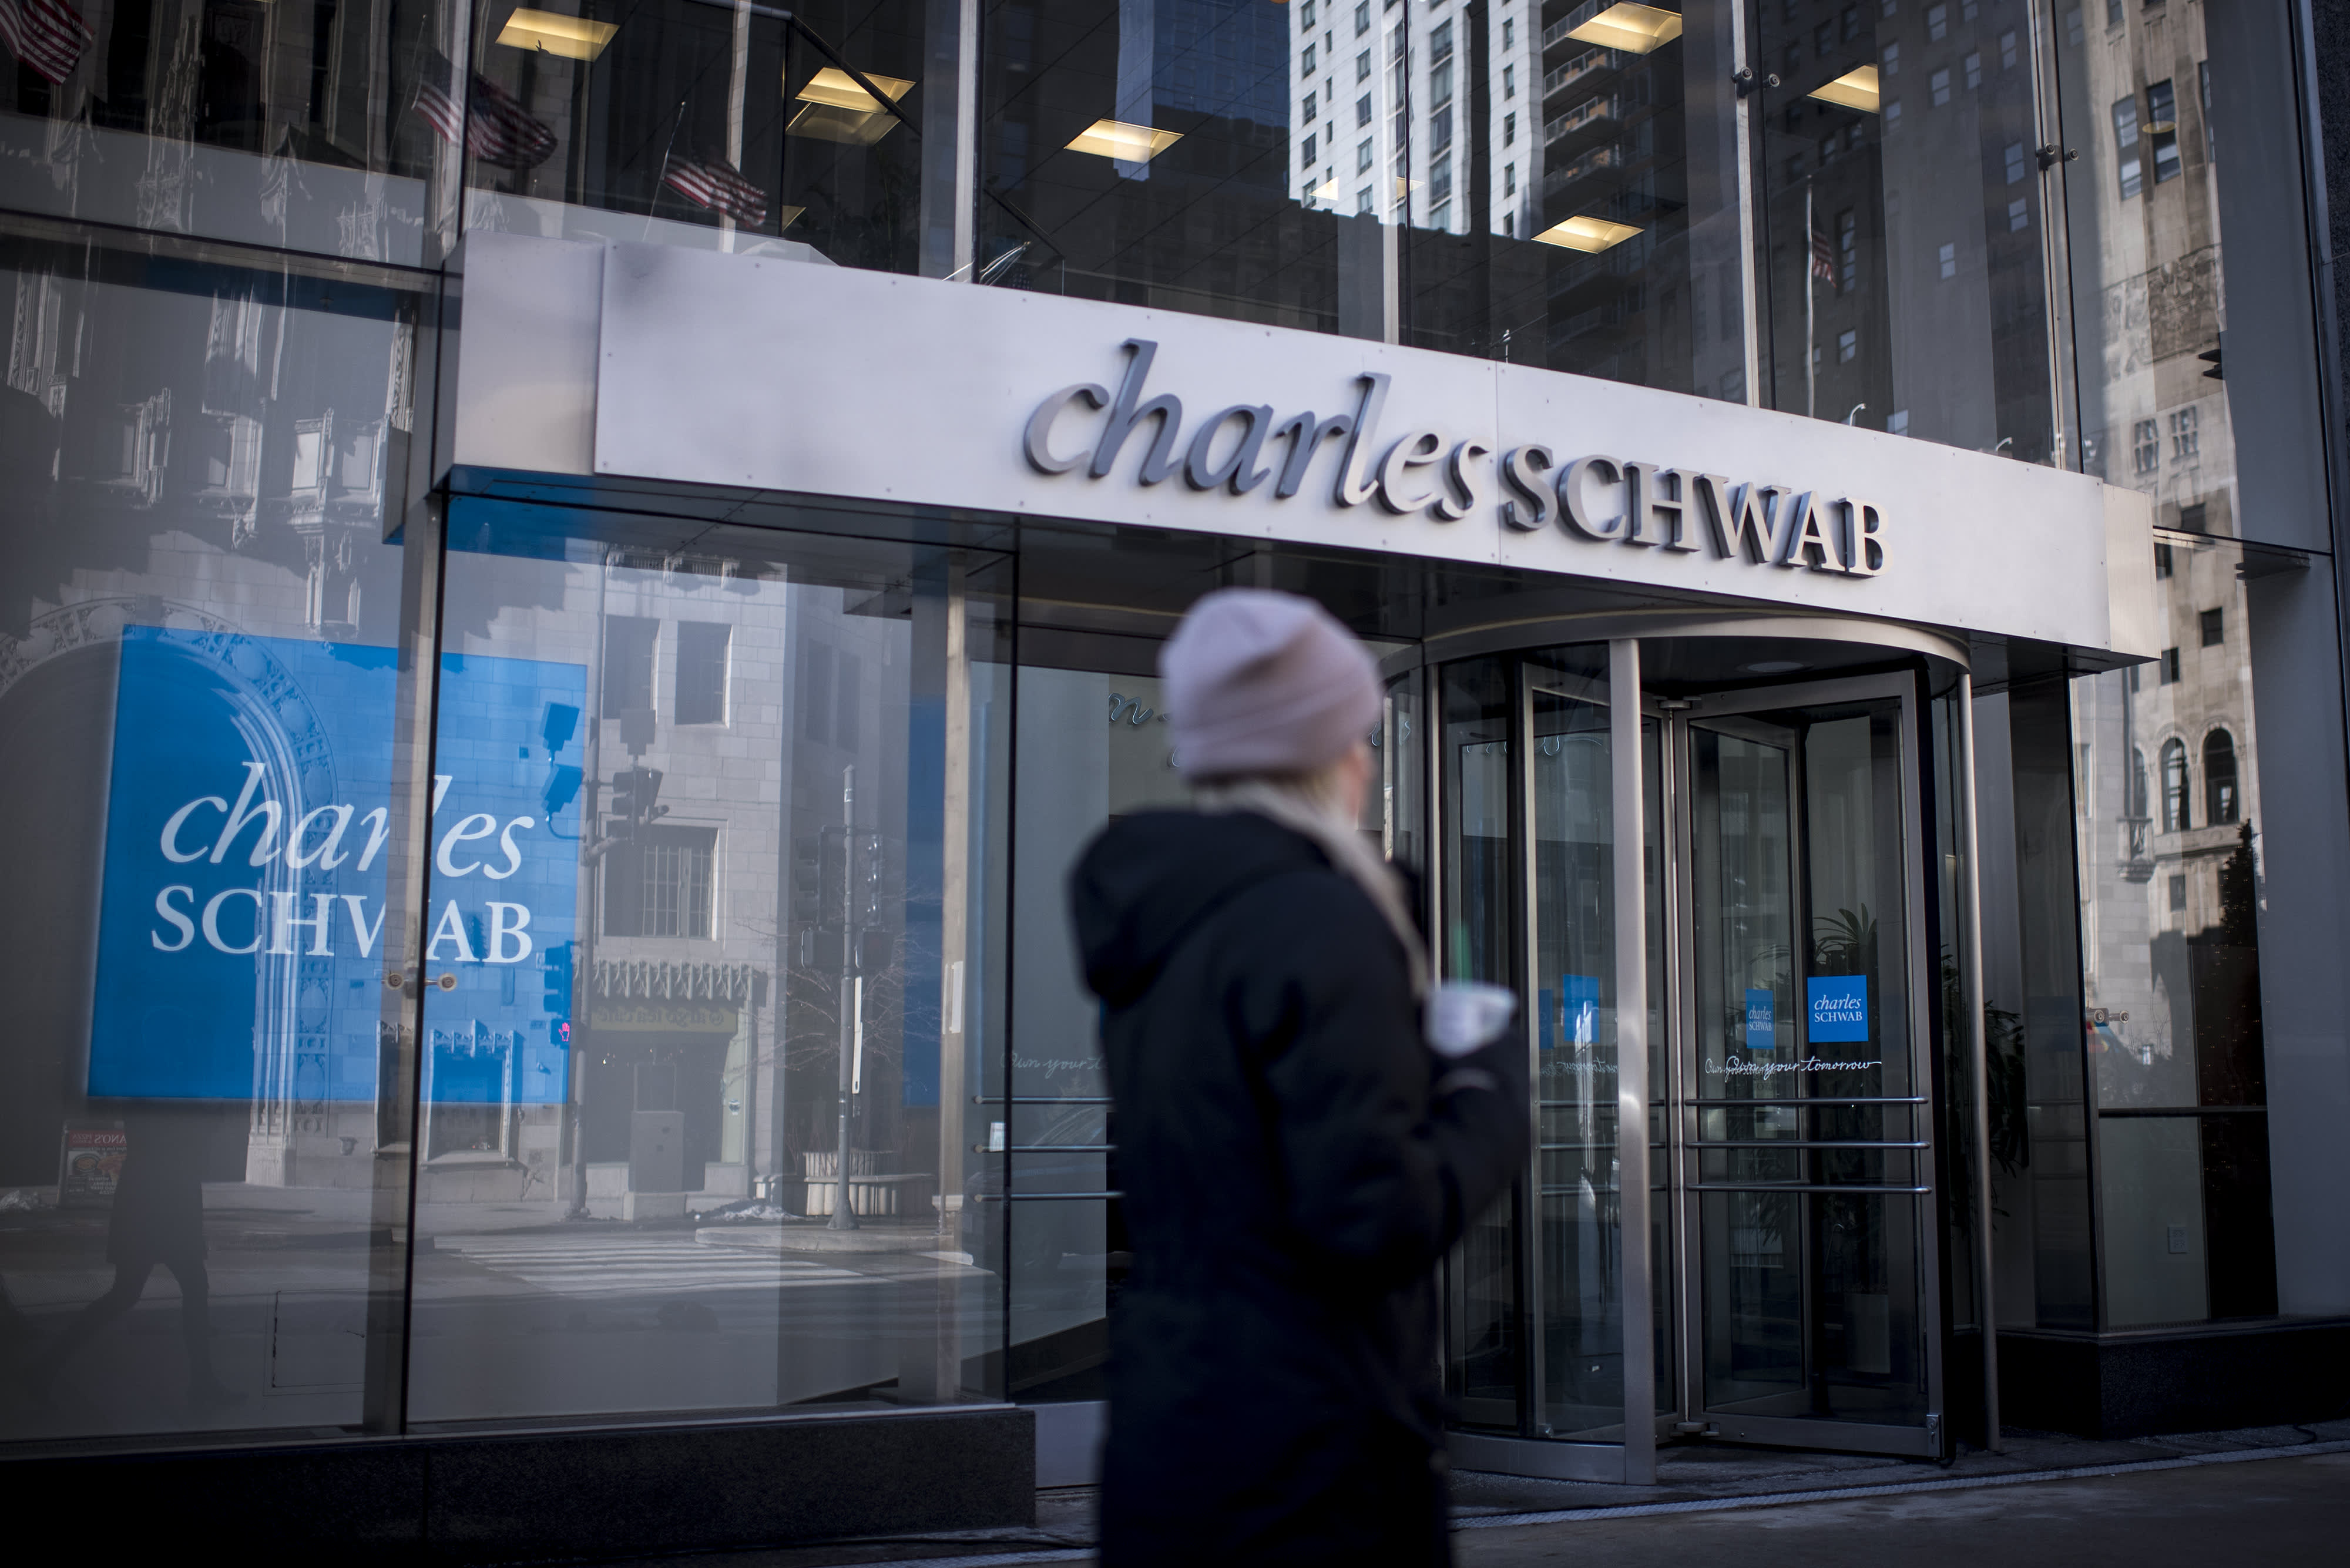 Charles Schwab Q4 2020 earnings